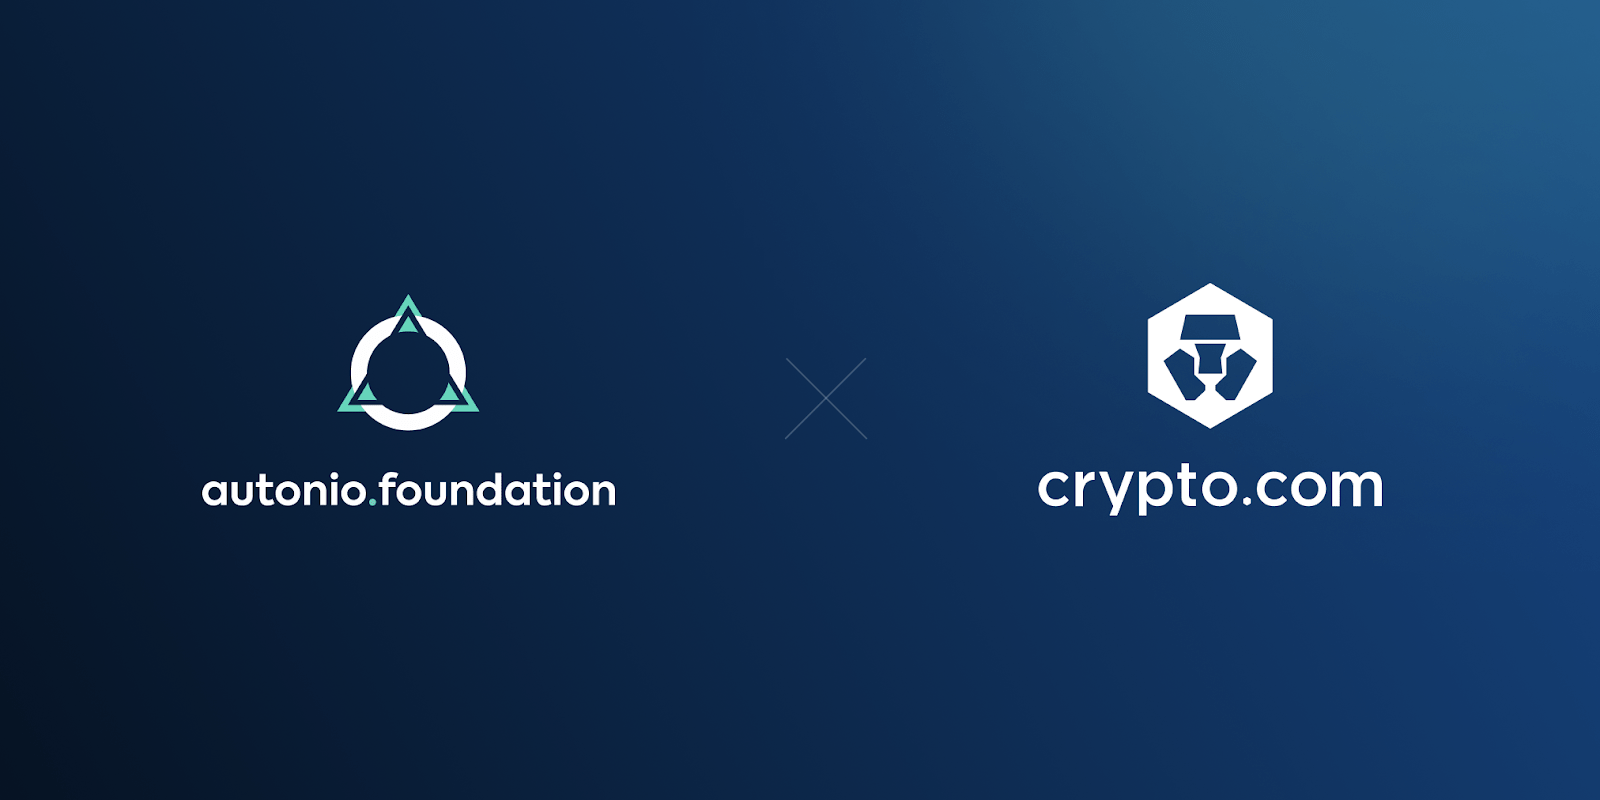 autonio-cryptodotcom-partnership